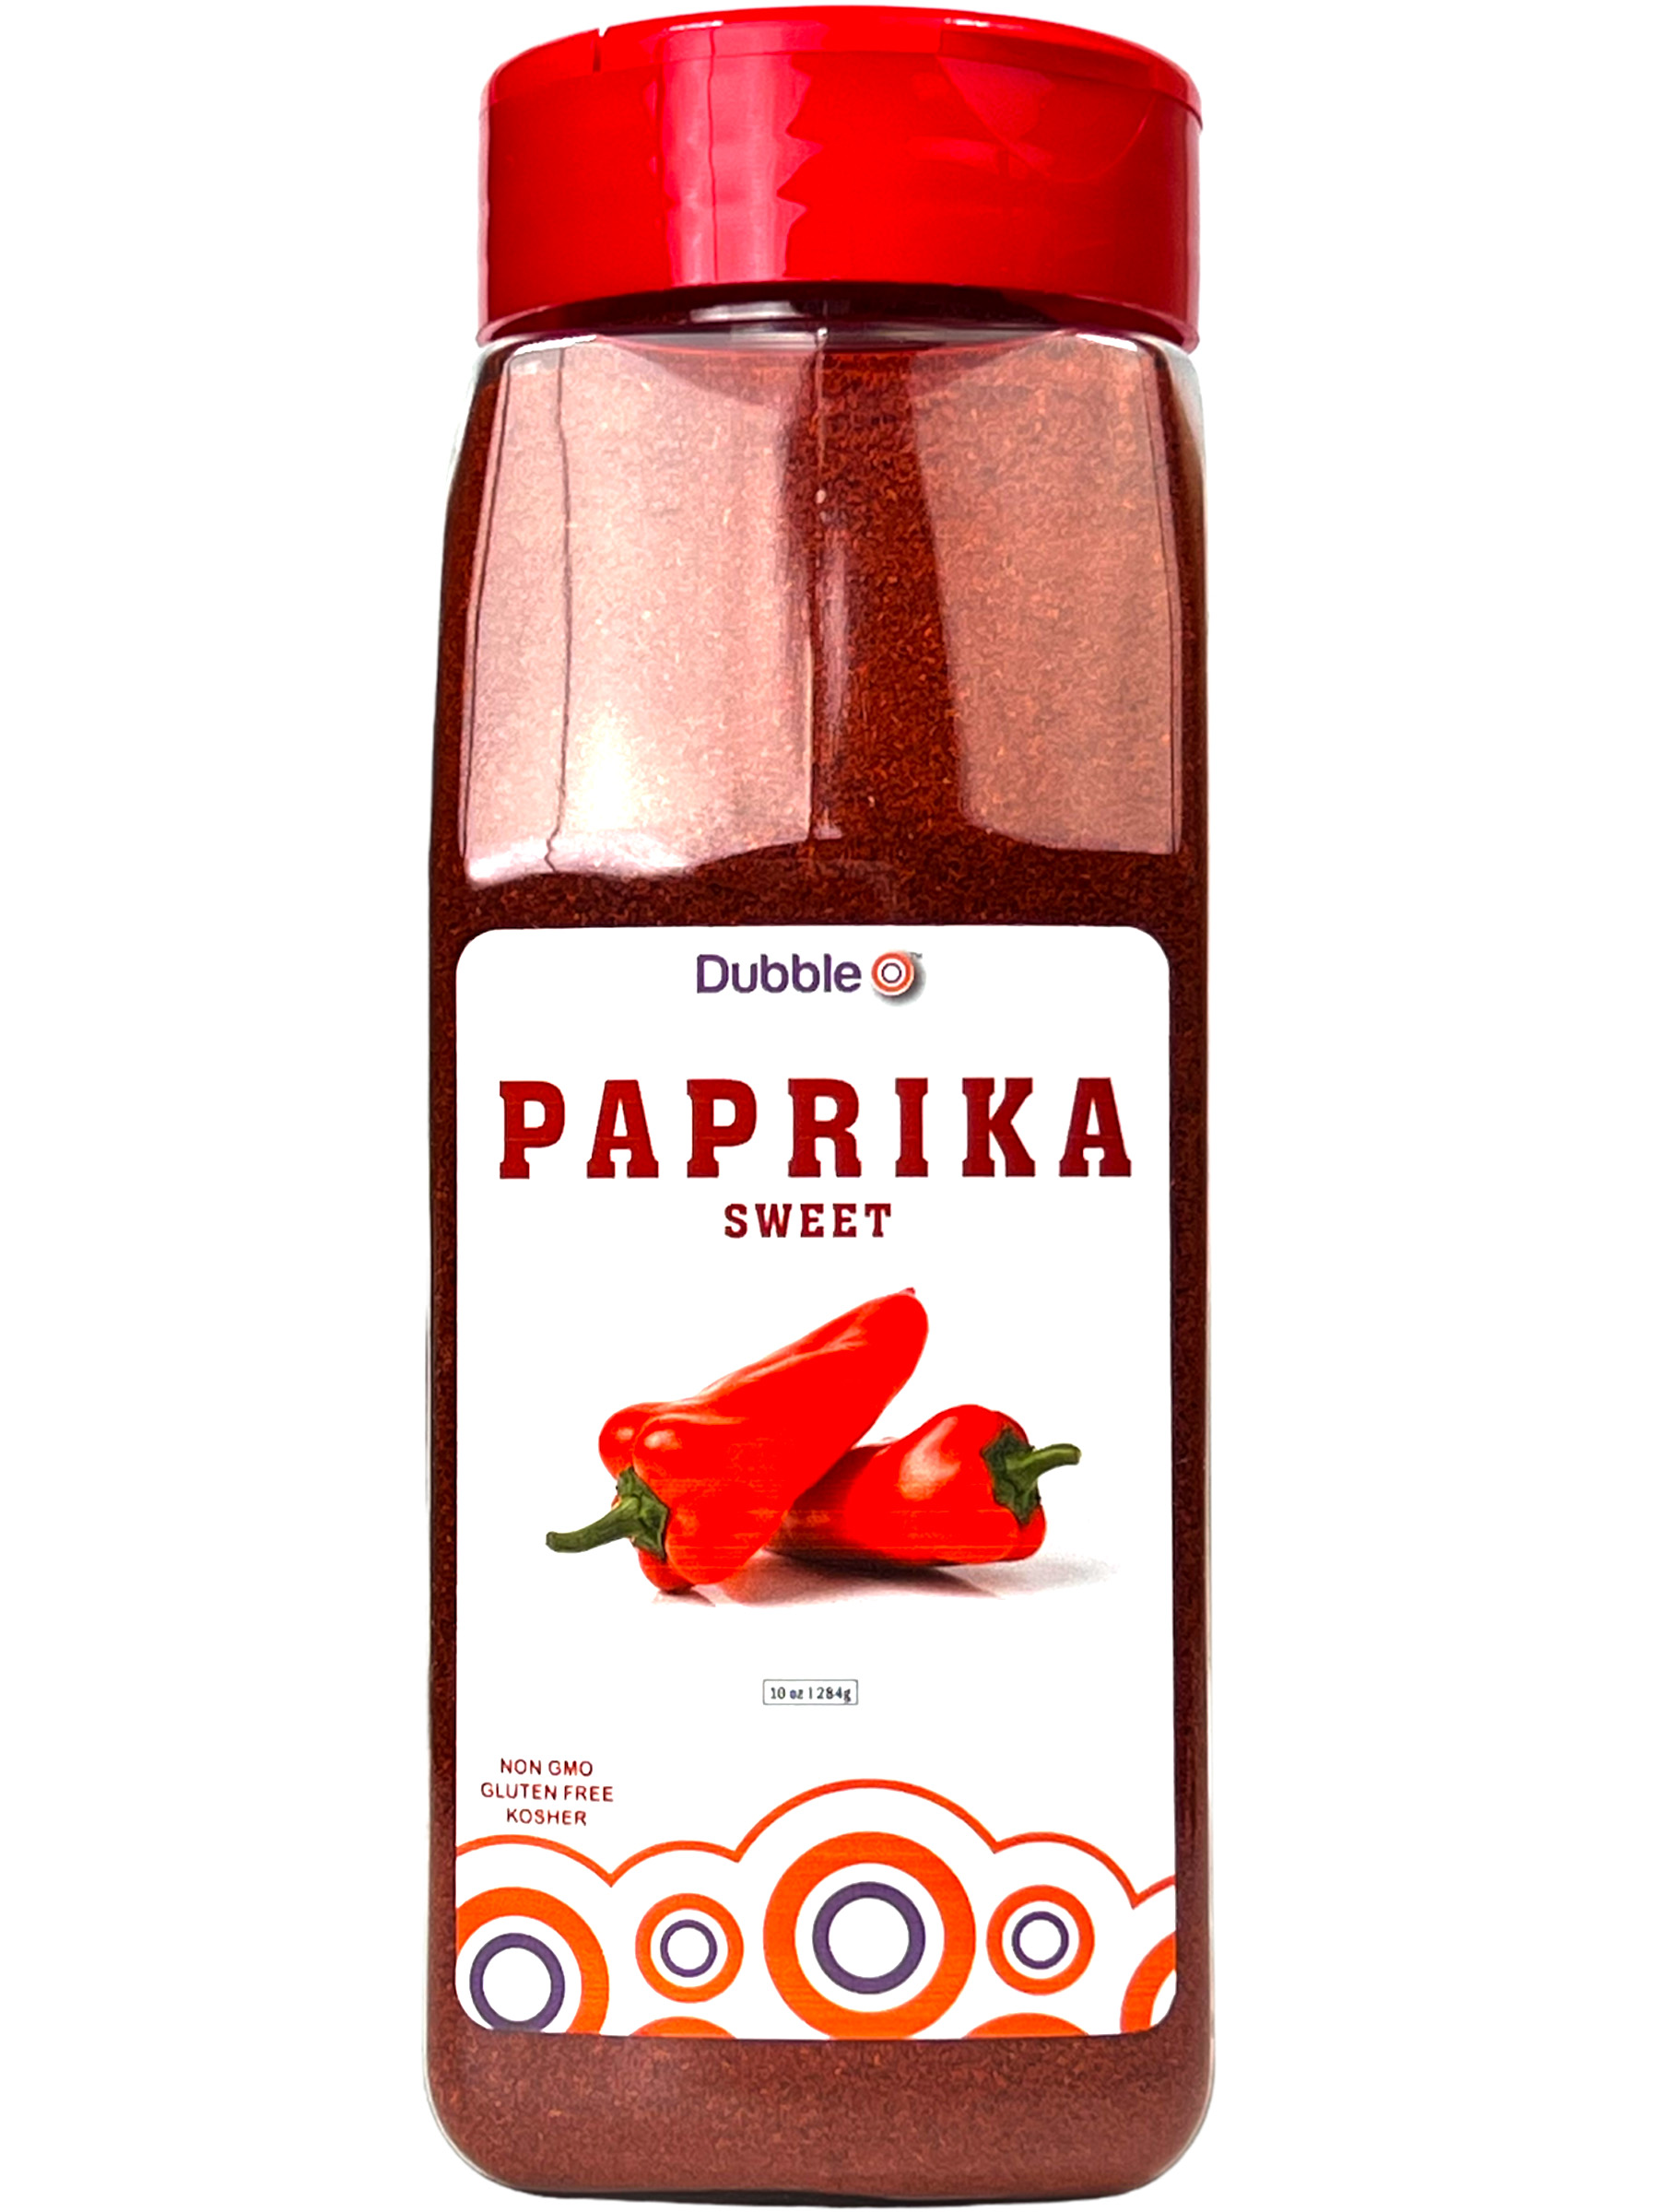 paprika powder